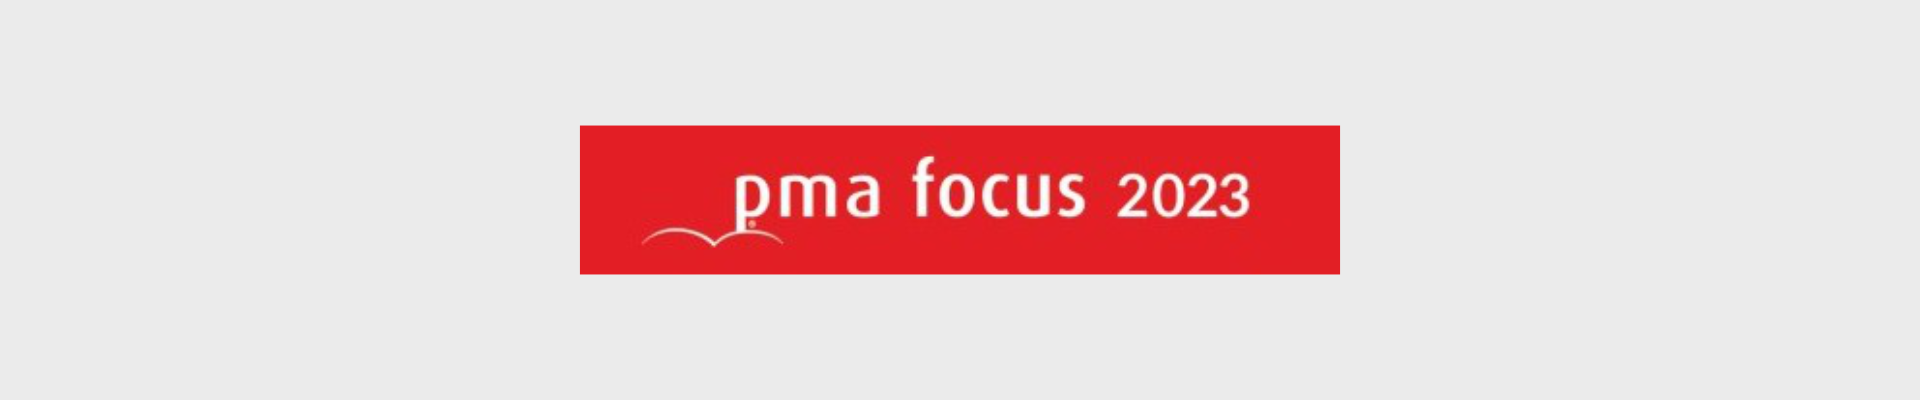 PMA Focus 2023